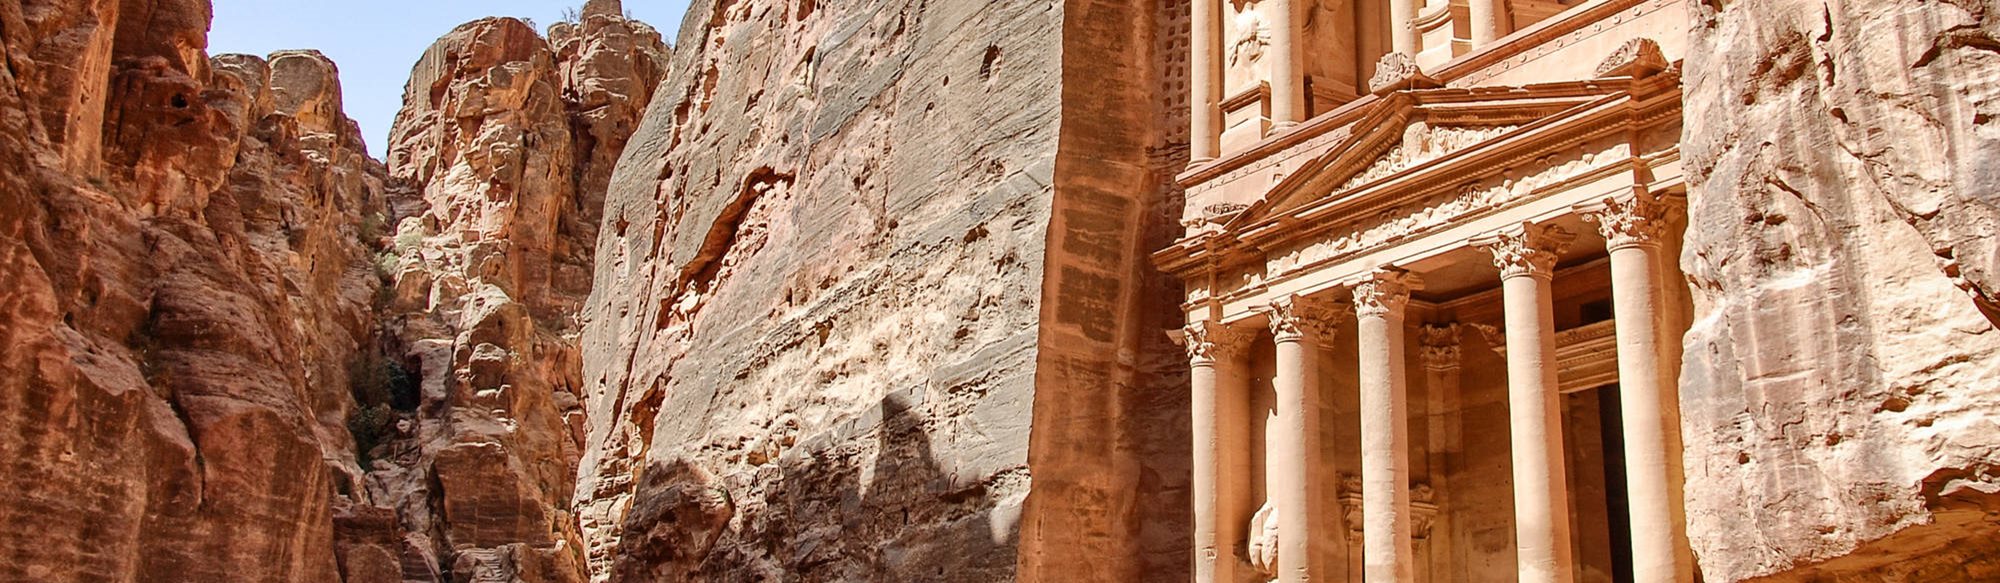 En rejse gennem Jordan med Petra